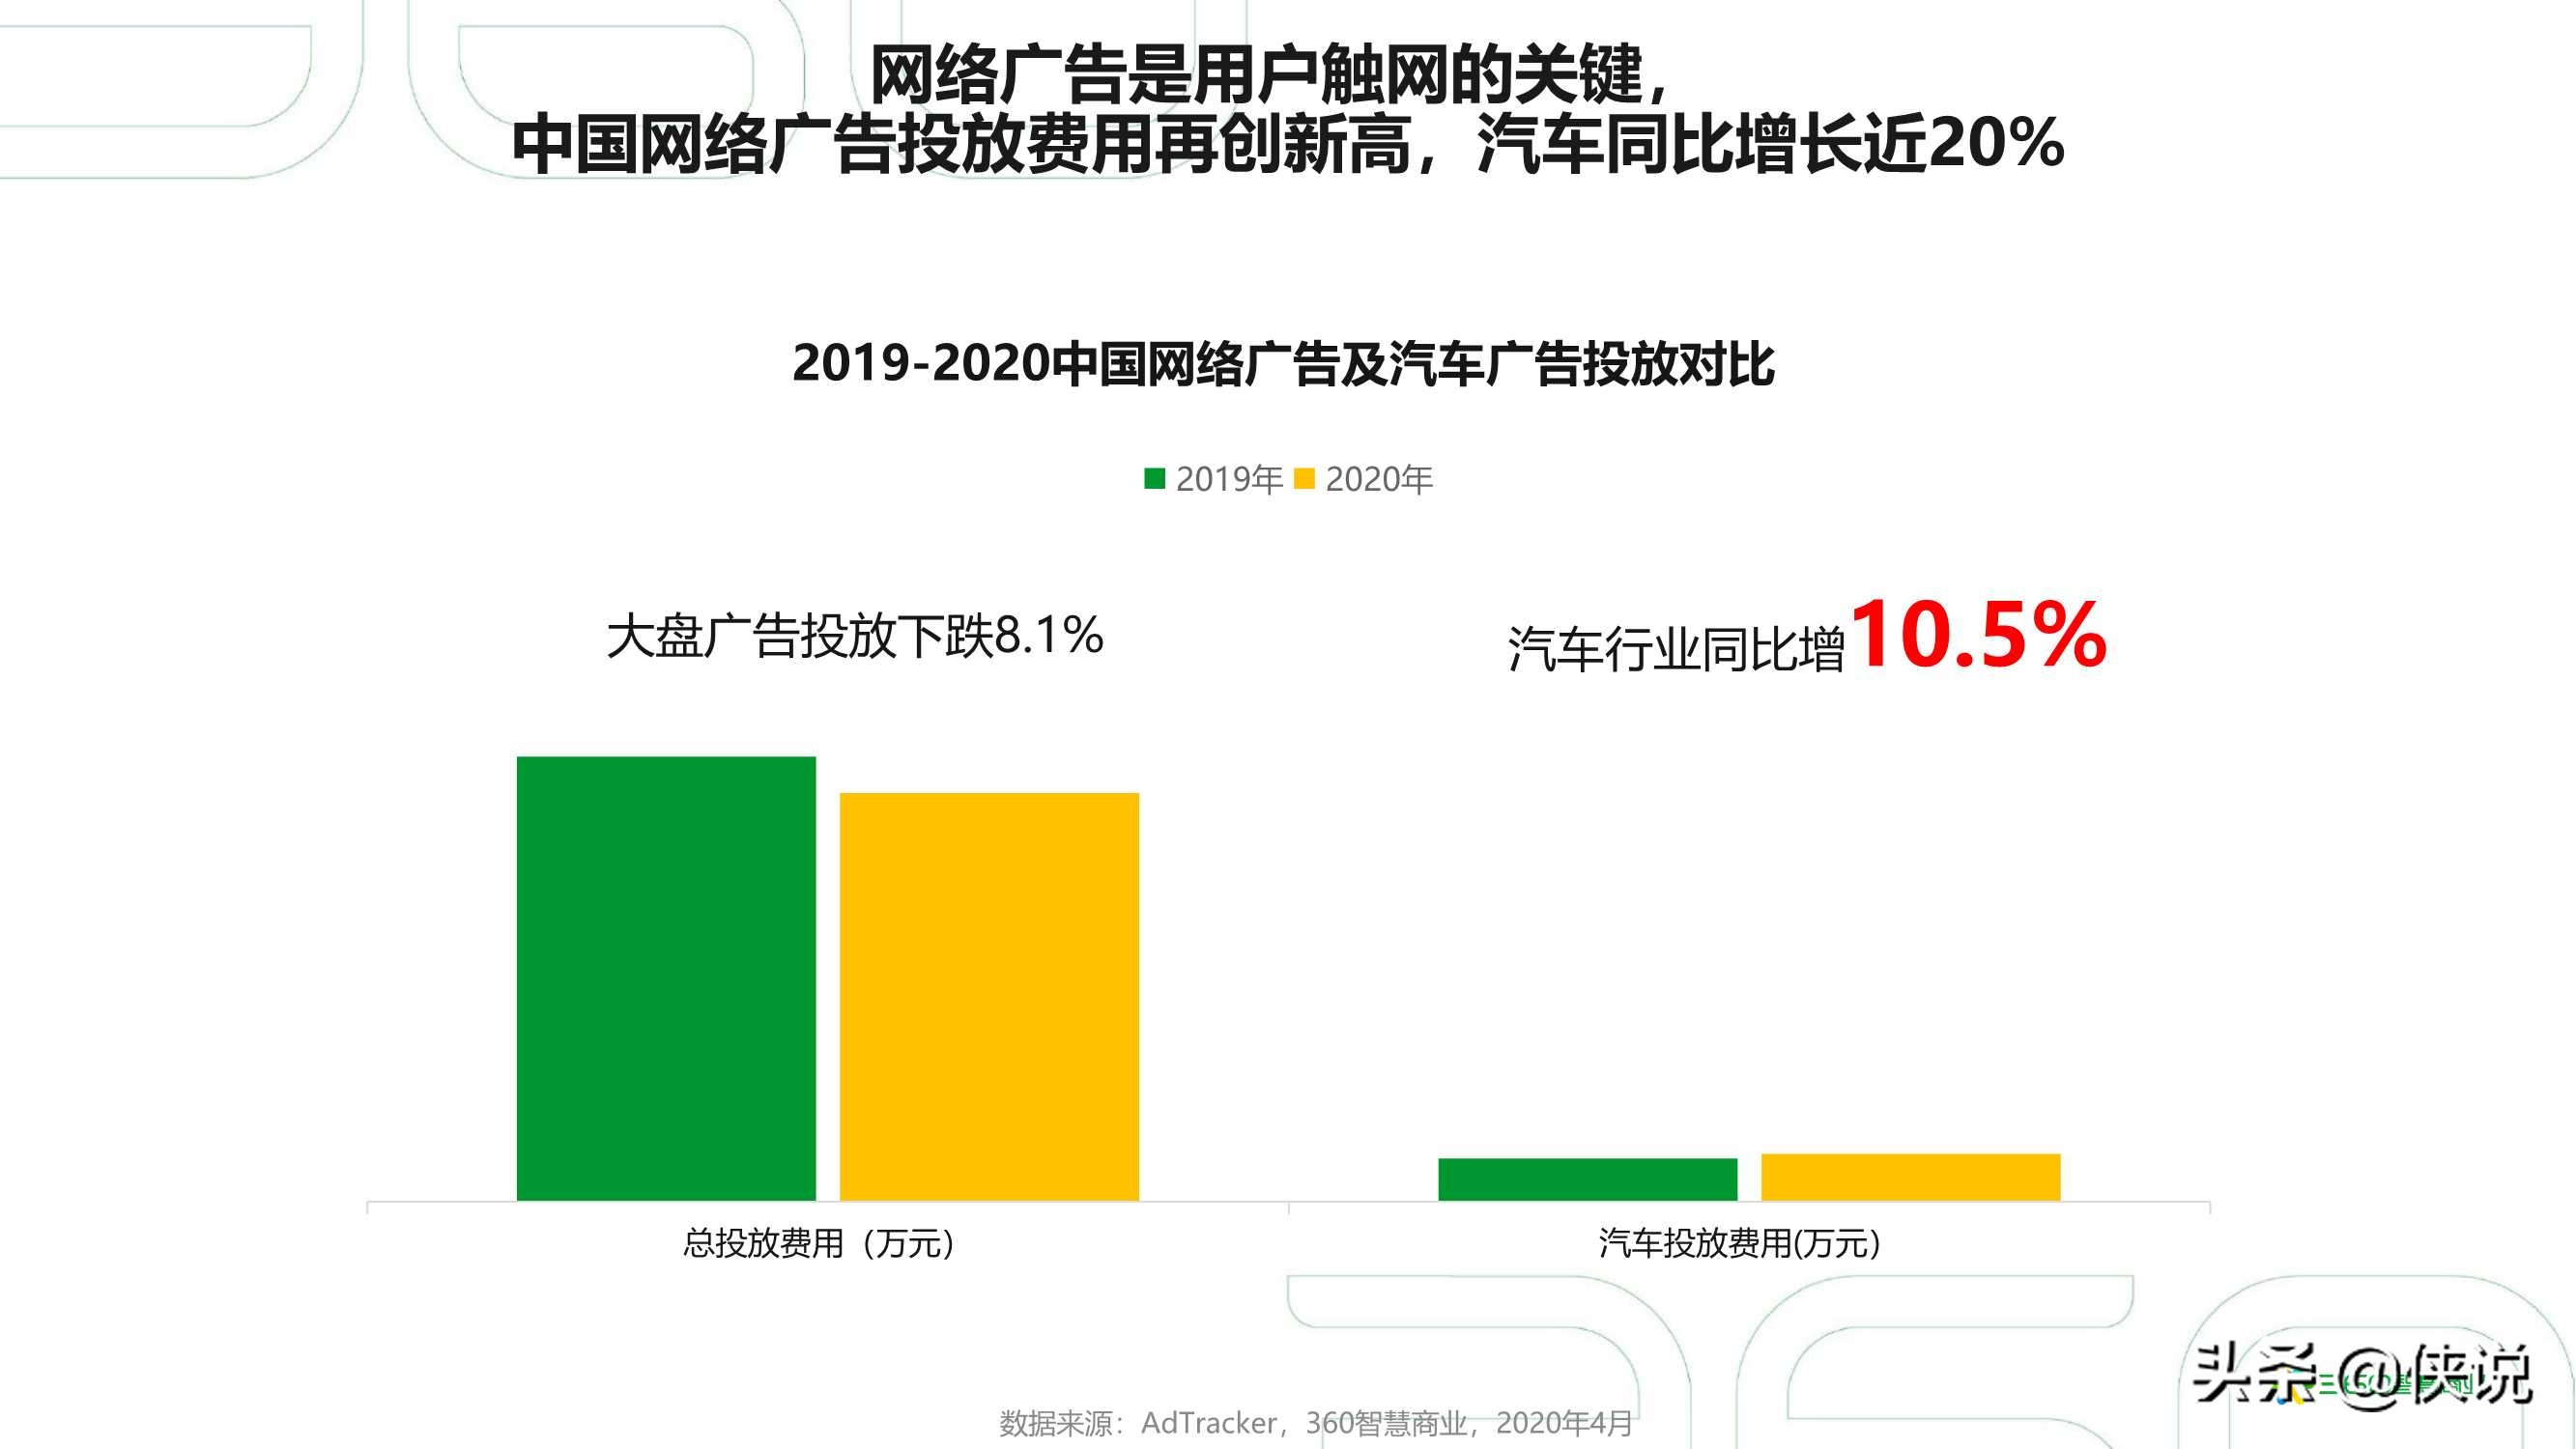 2021年中国汽车行业研究报告